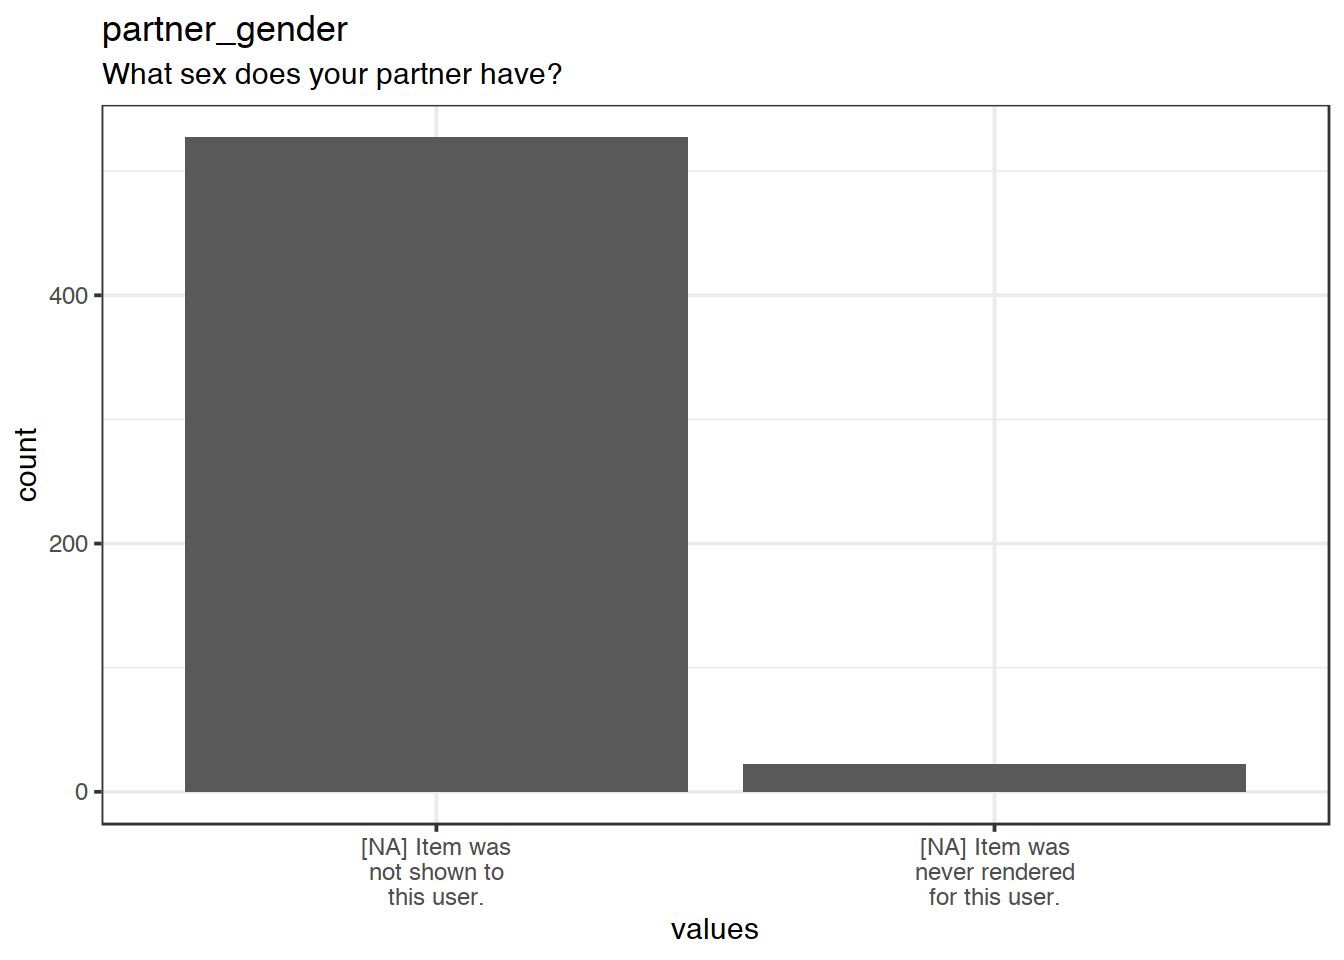 Plot of missing values for partner_gender